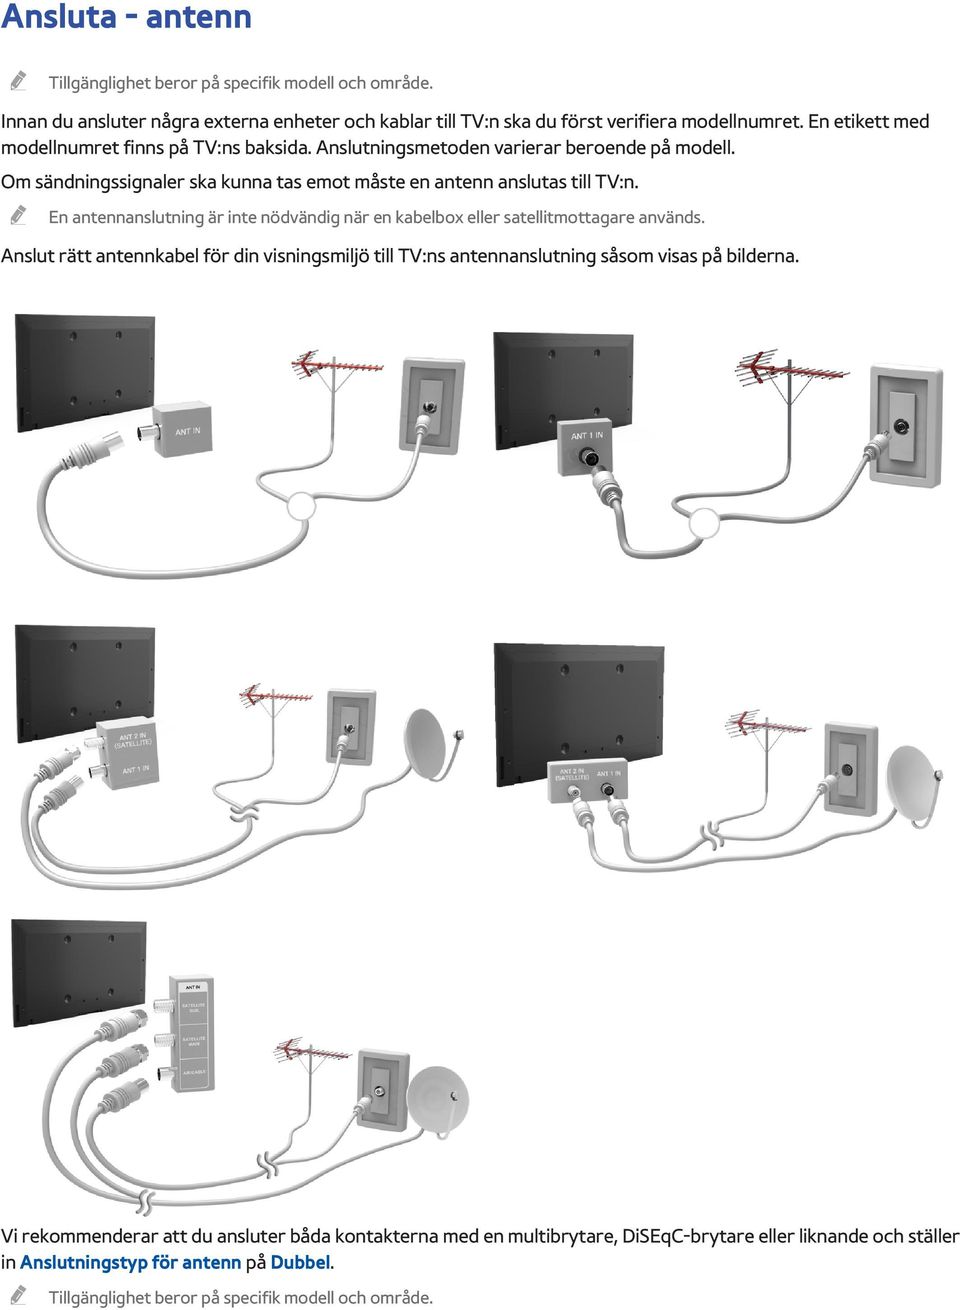 En antennanslutning är inte nödvändig när en kabelbox eller satellitmottagare används.